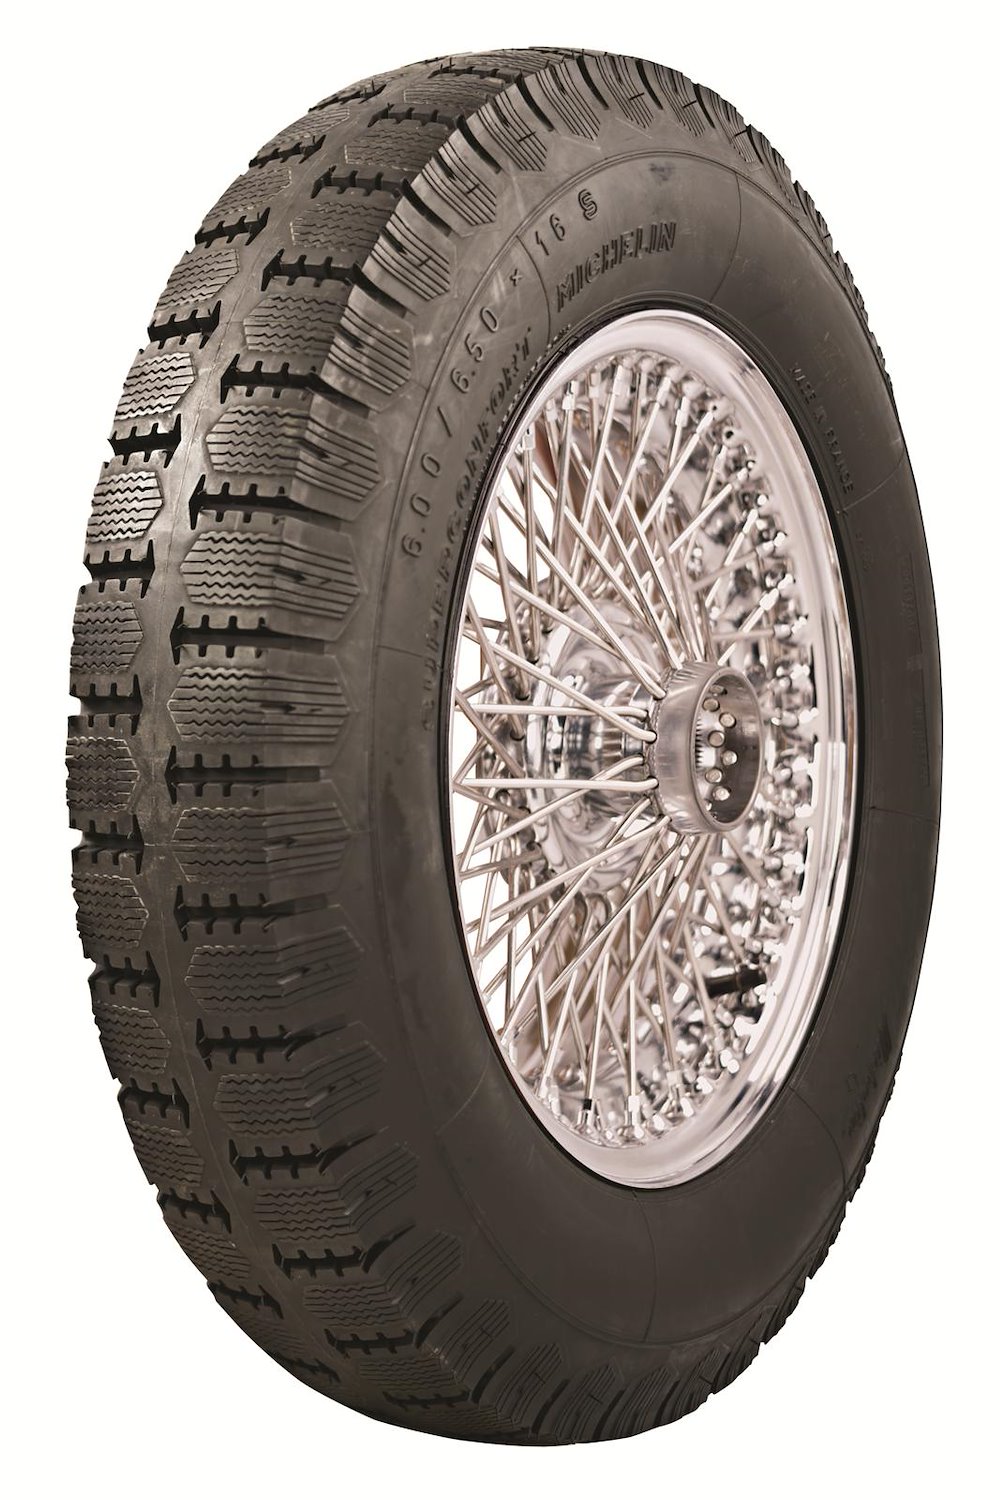 63155 Tire, Michelin Super Comfort Stop S, 130/140x40